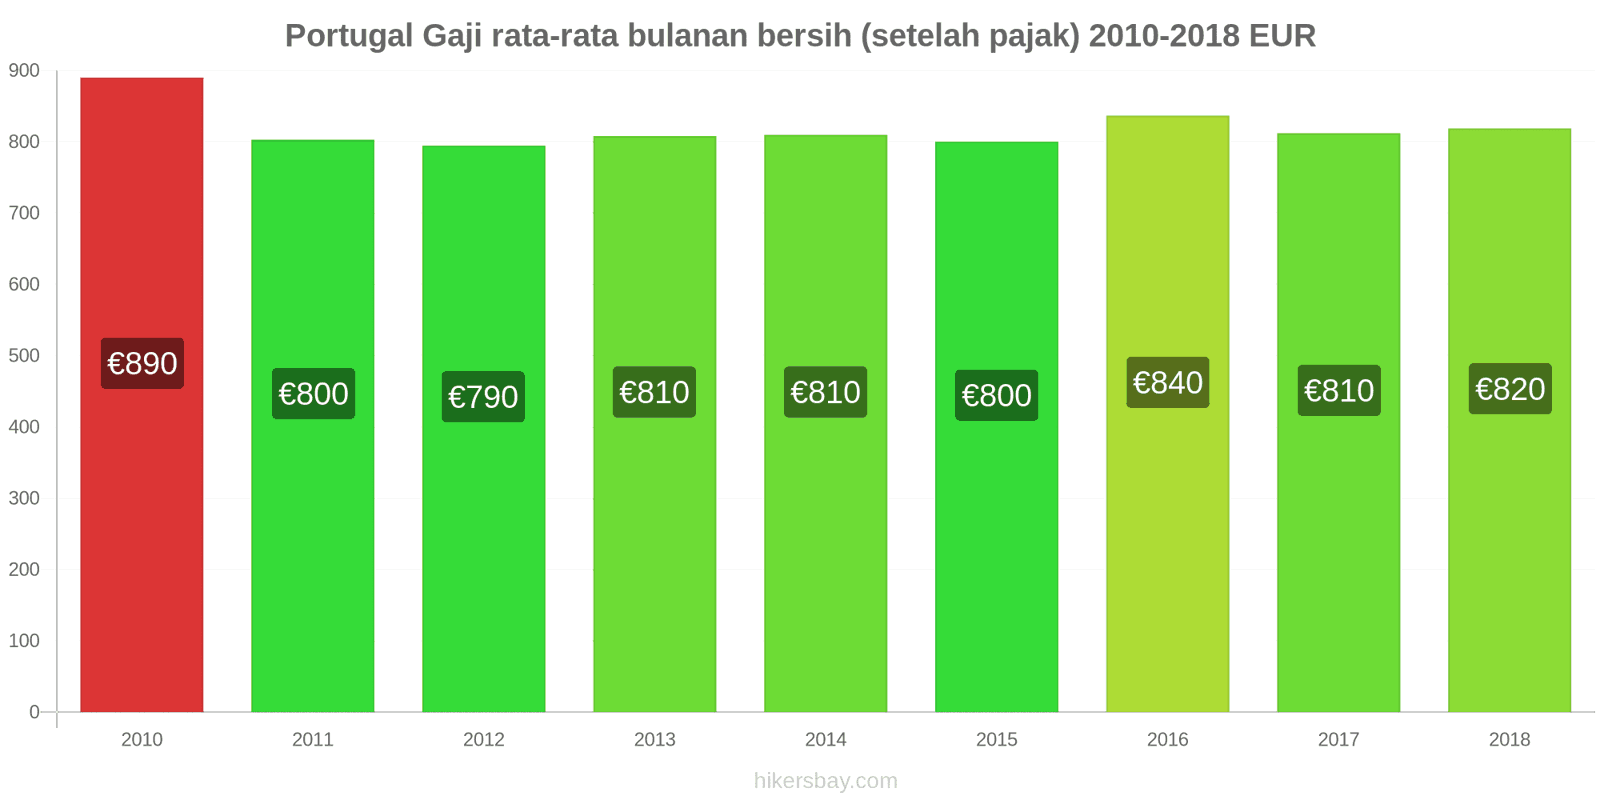 Portugal perubahan harga Gaji bersih rata-rata bulanan (setelah pajak) hikersbay.com